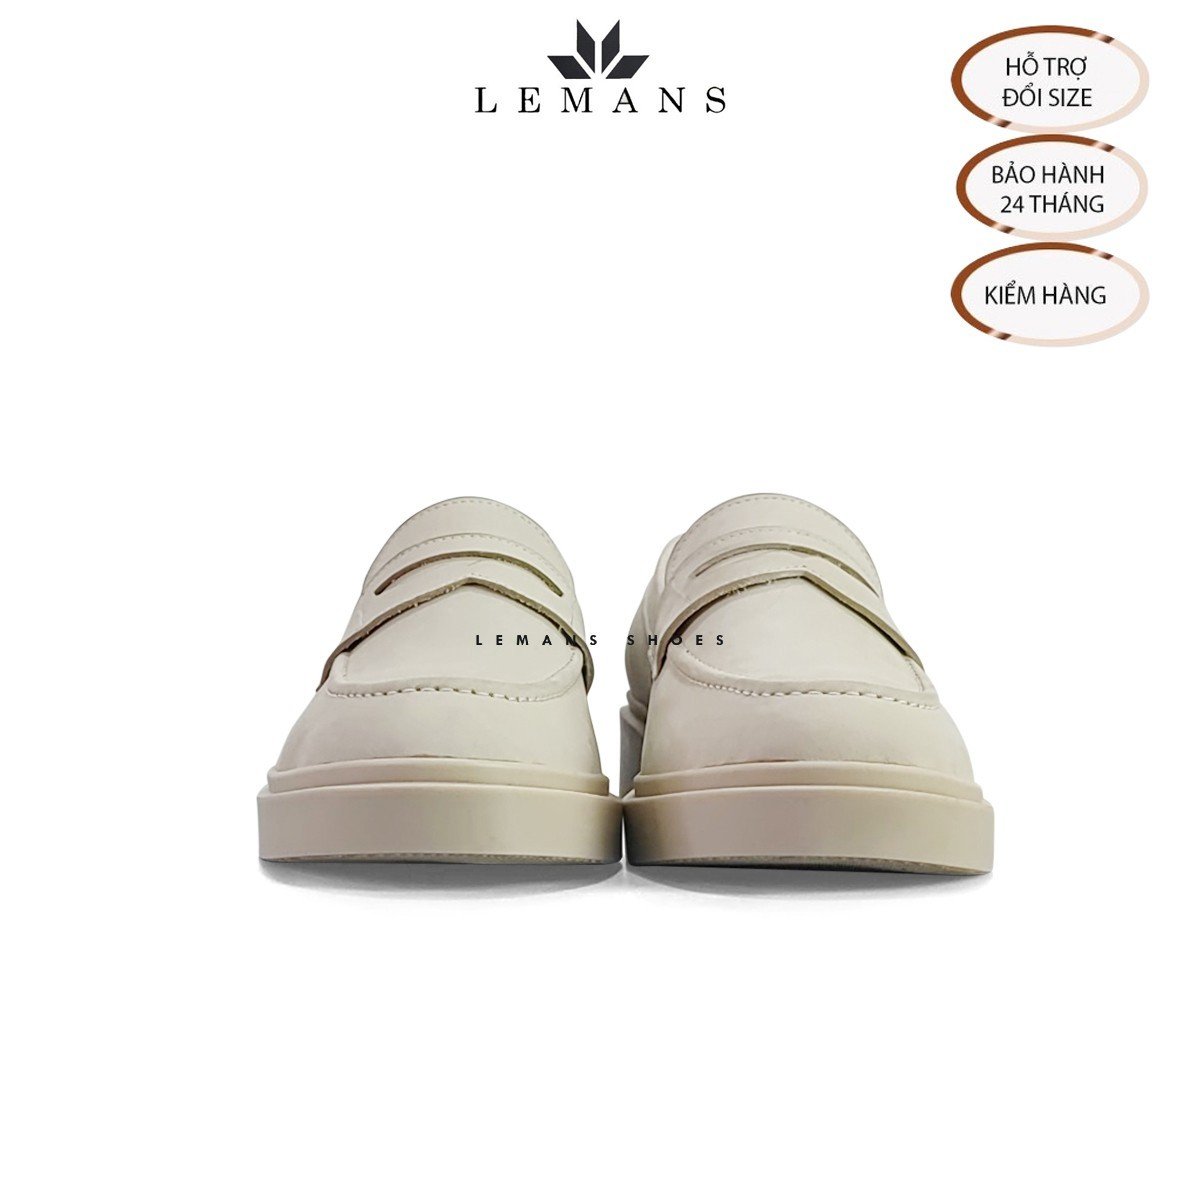 Giày Loafer da Nubuck Tan LEMANS PL01N, đế tan hạt kim cương tăng cao 4cm khuôn độc quyền Bảo hành 24 tháng